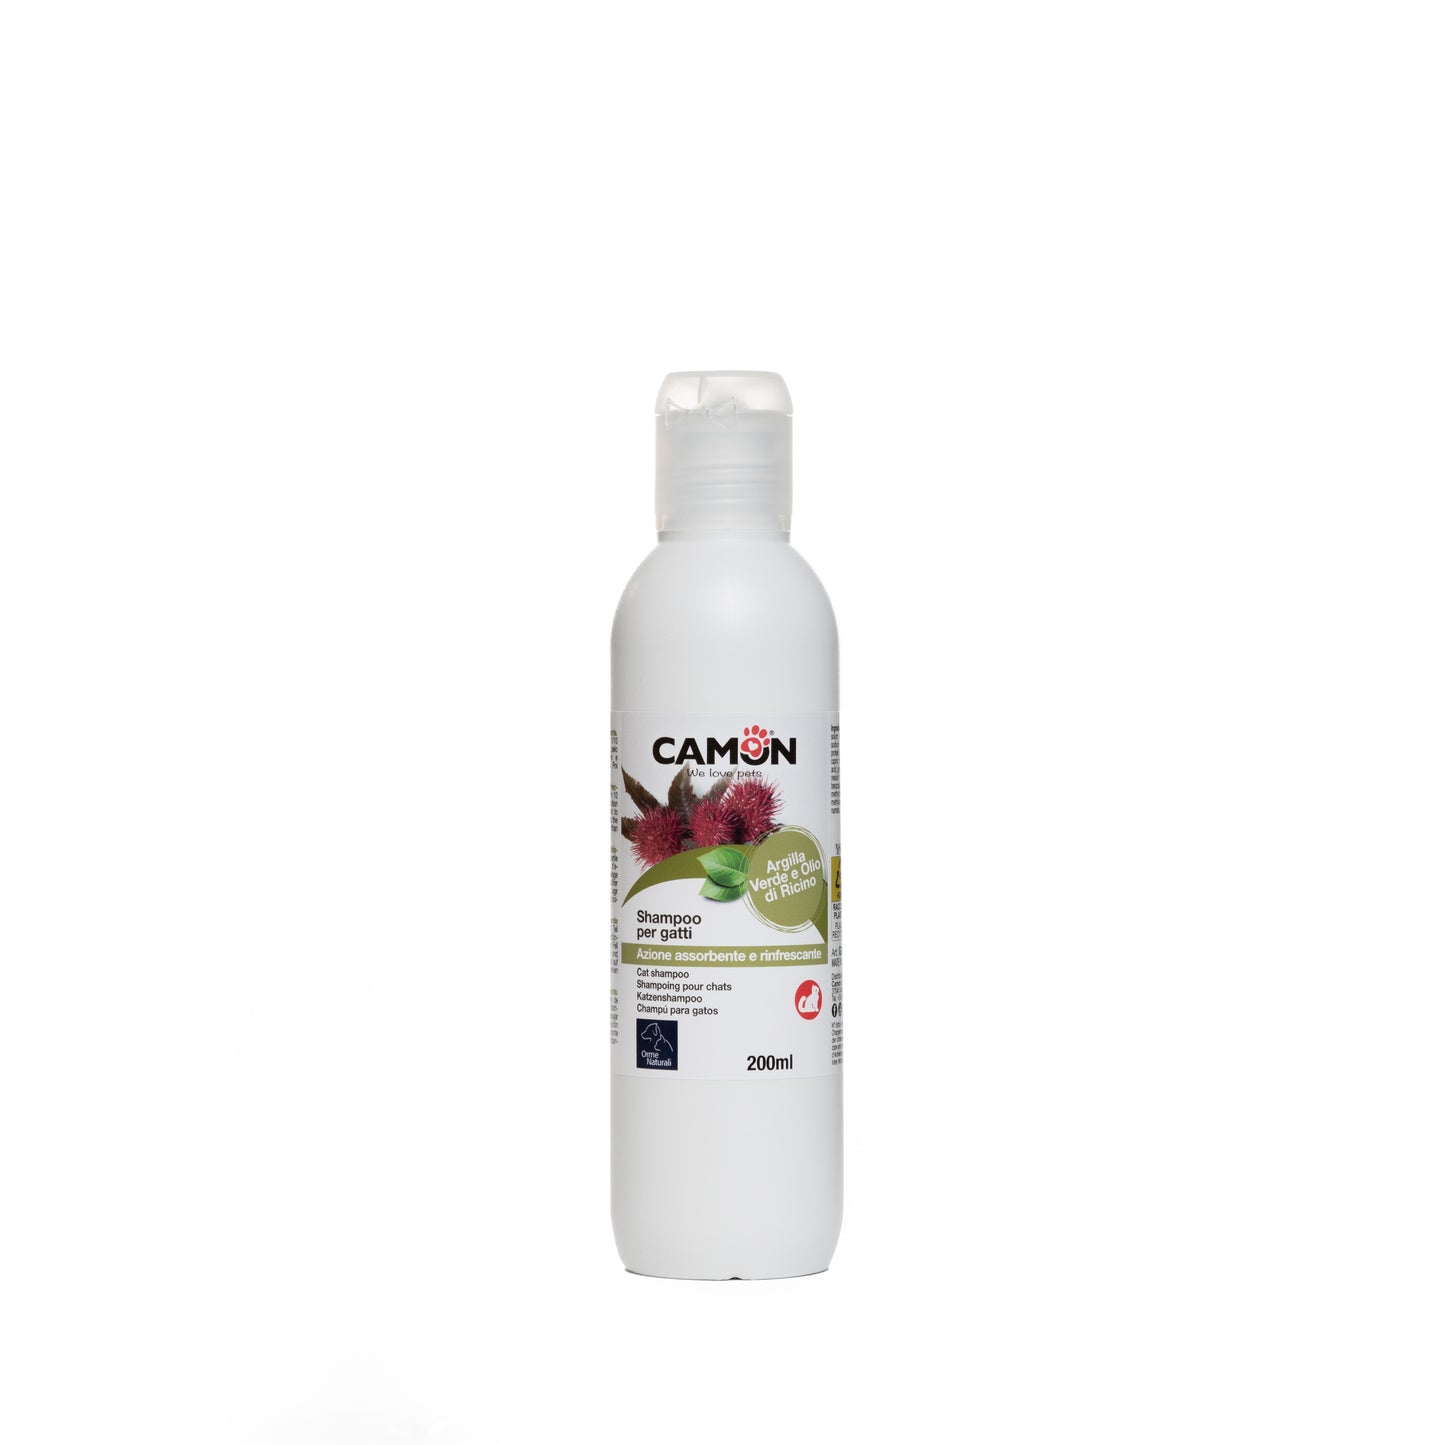 Camon Natural - Shampoo per gatti - 200ml